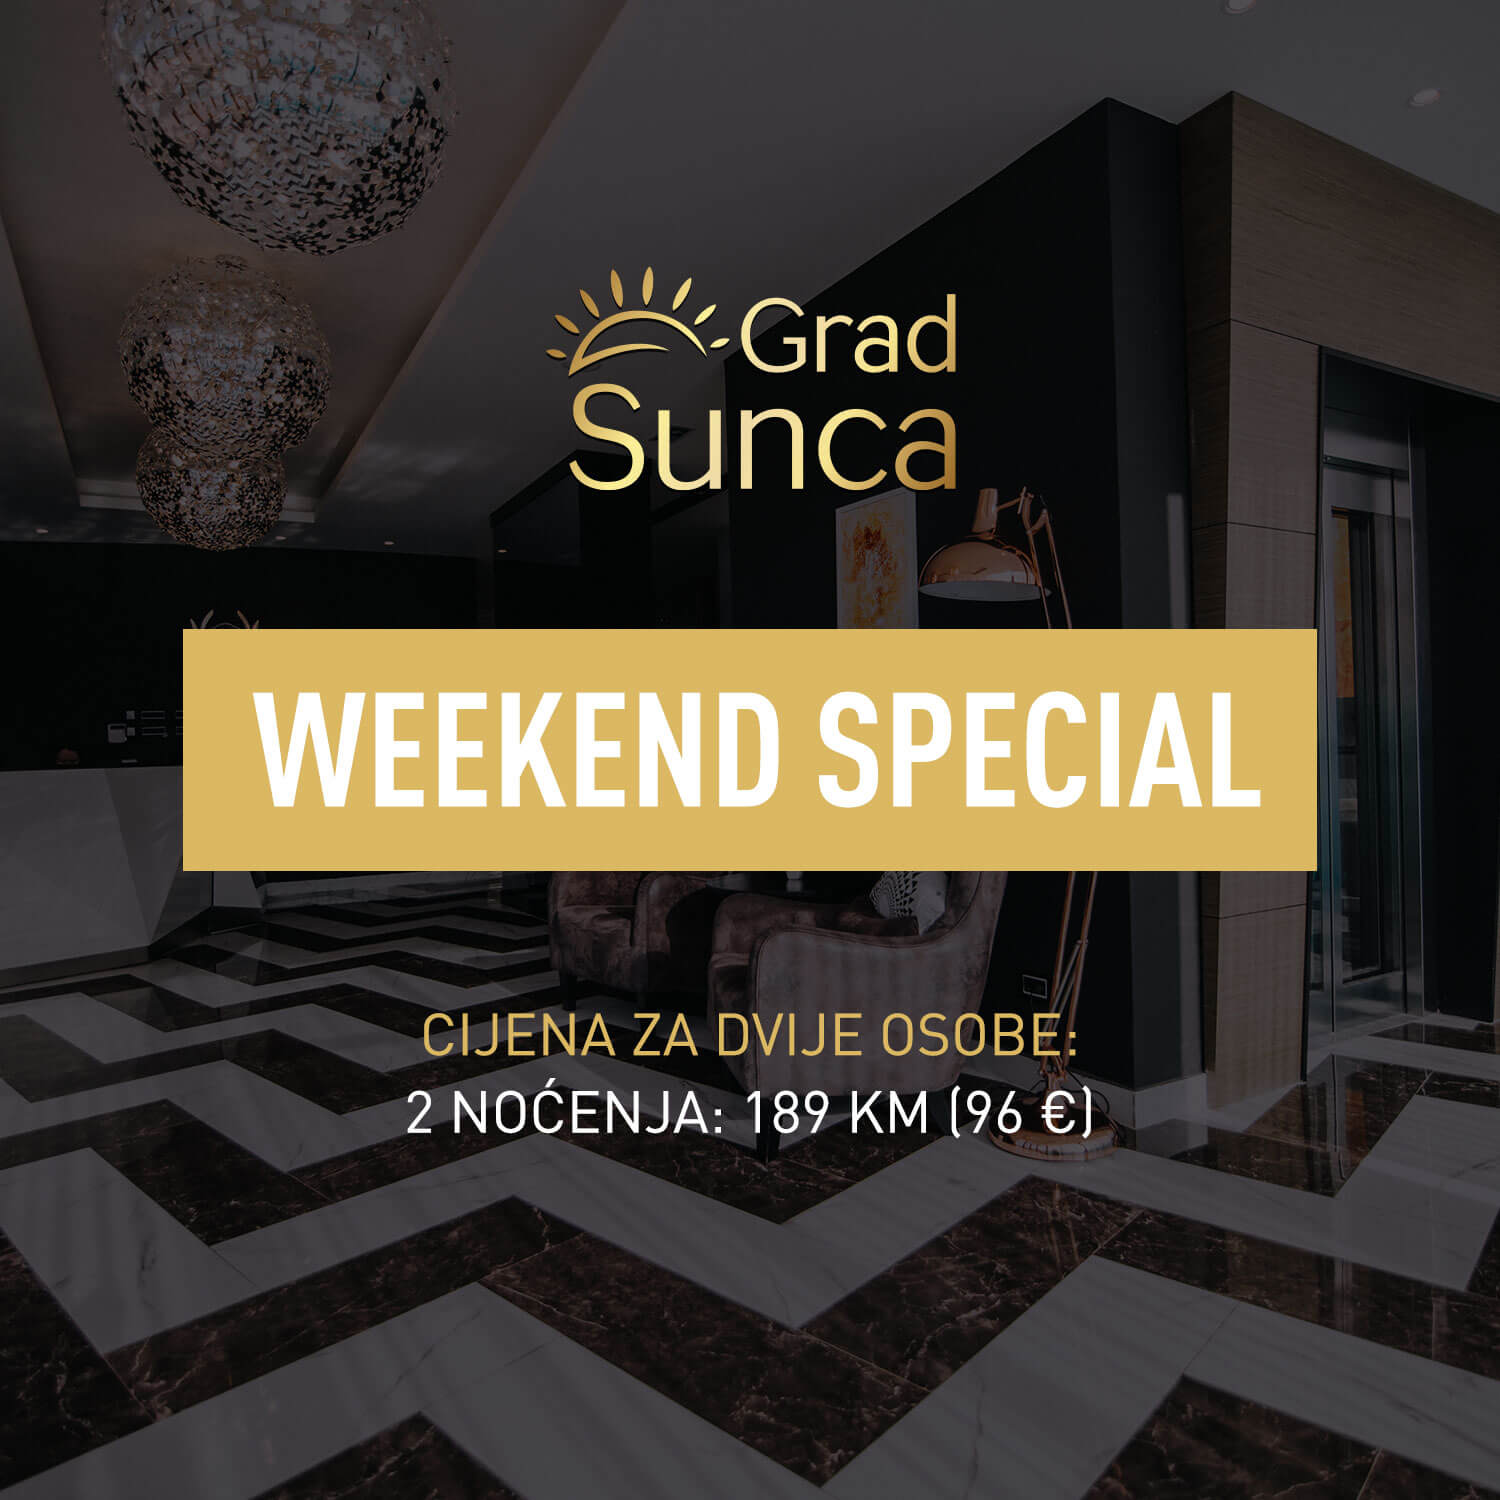 Grad sunca - Weekend special